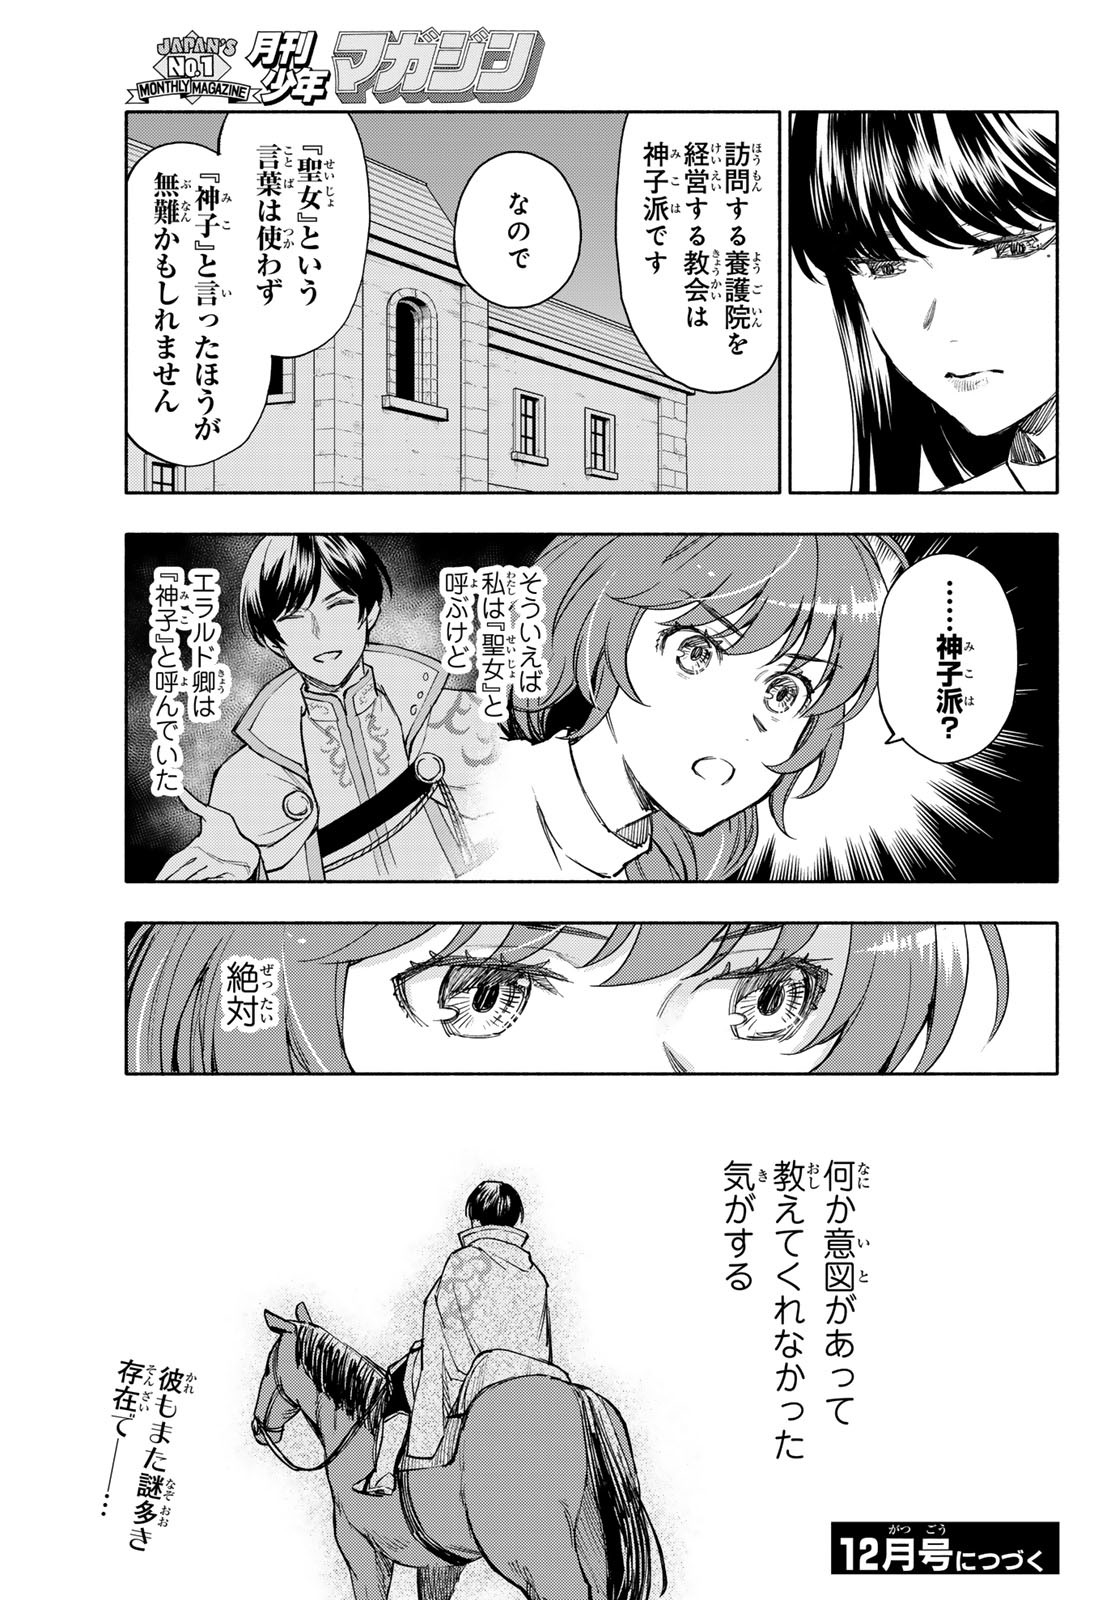 Seijo ni Uso wa Tsuujinai - Chapter 8 - Page 21